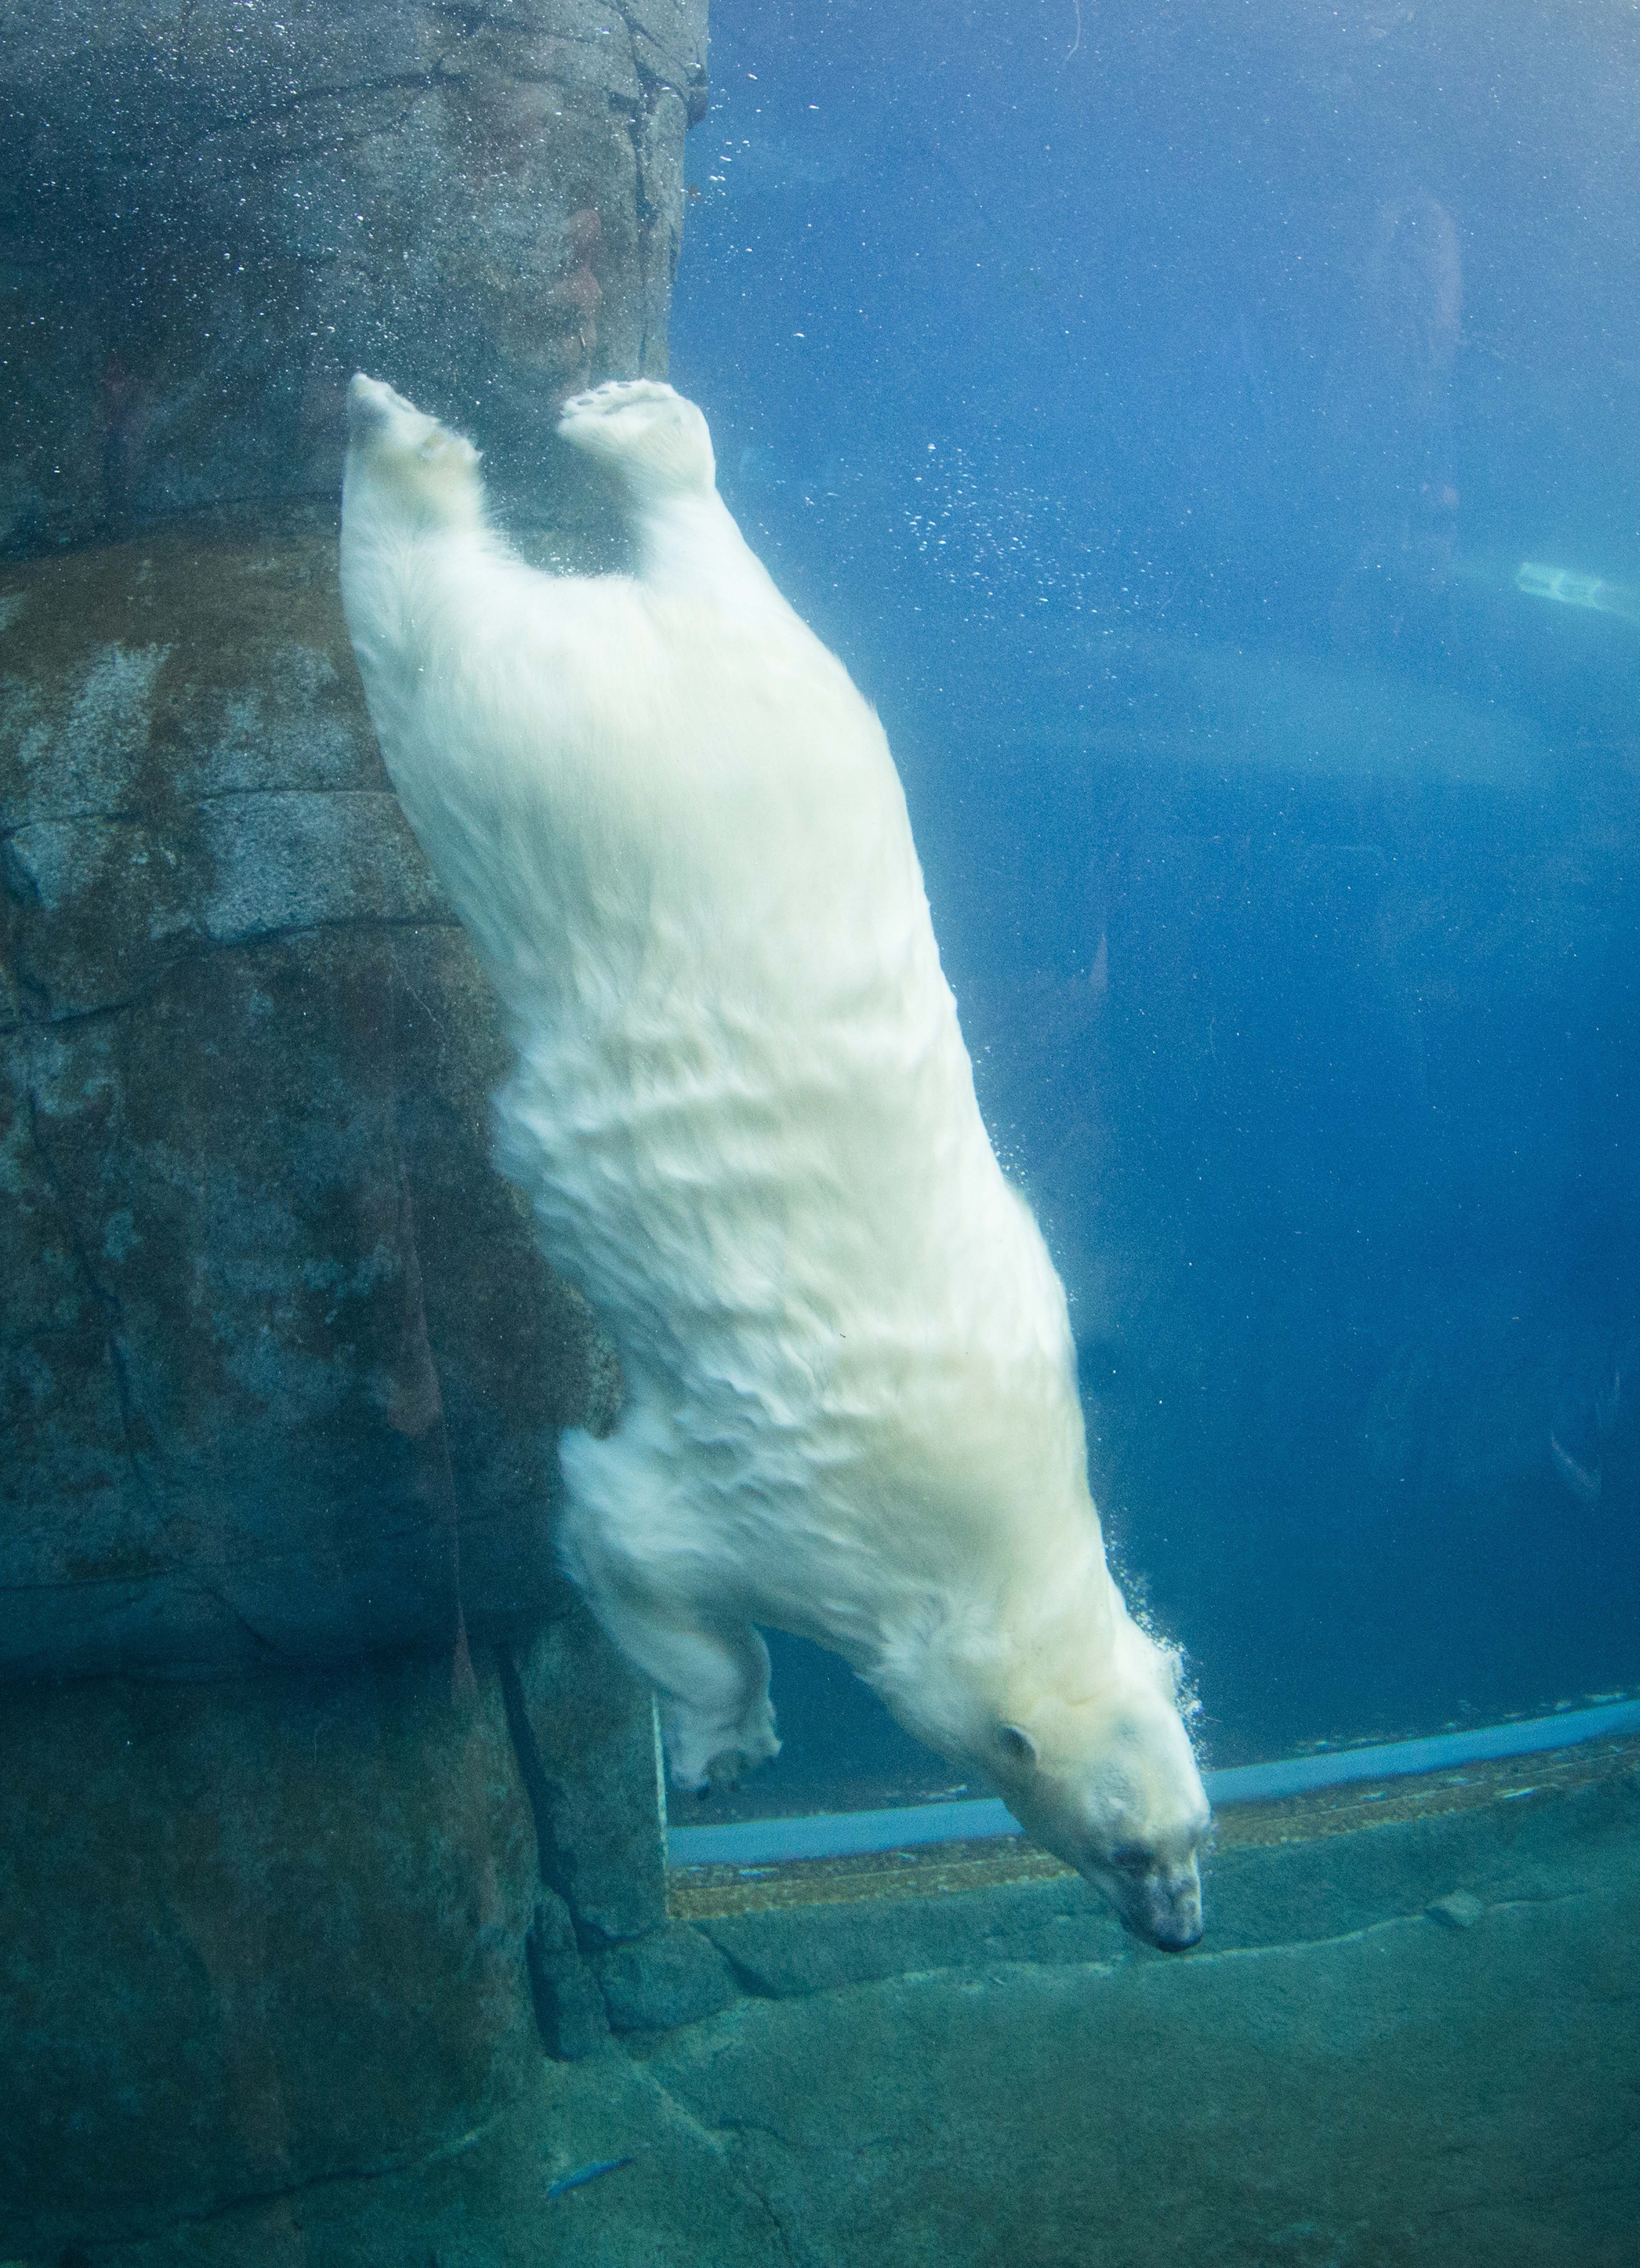 Visste du att isbjörnar kan simma långa distanser utan att stanna? 